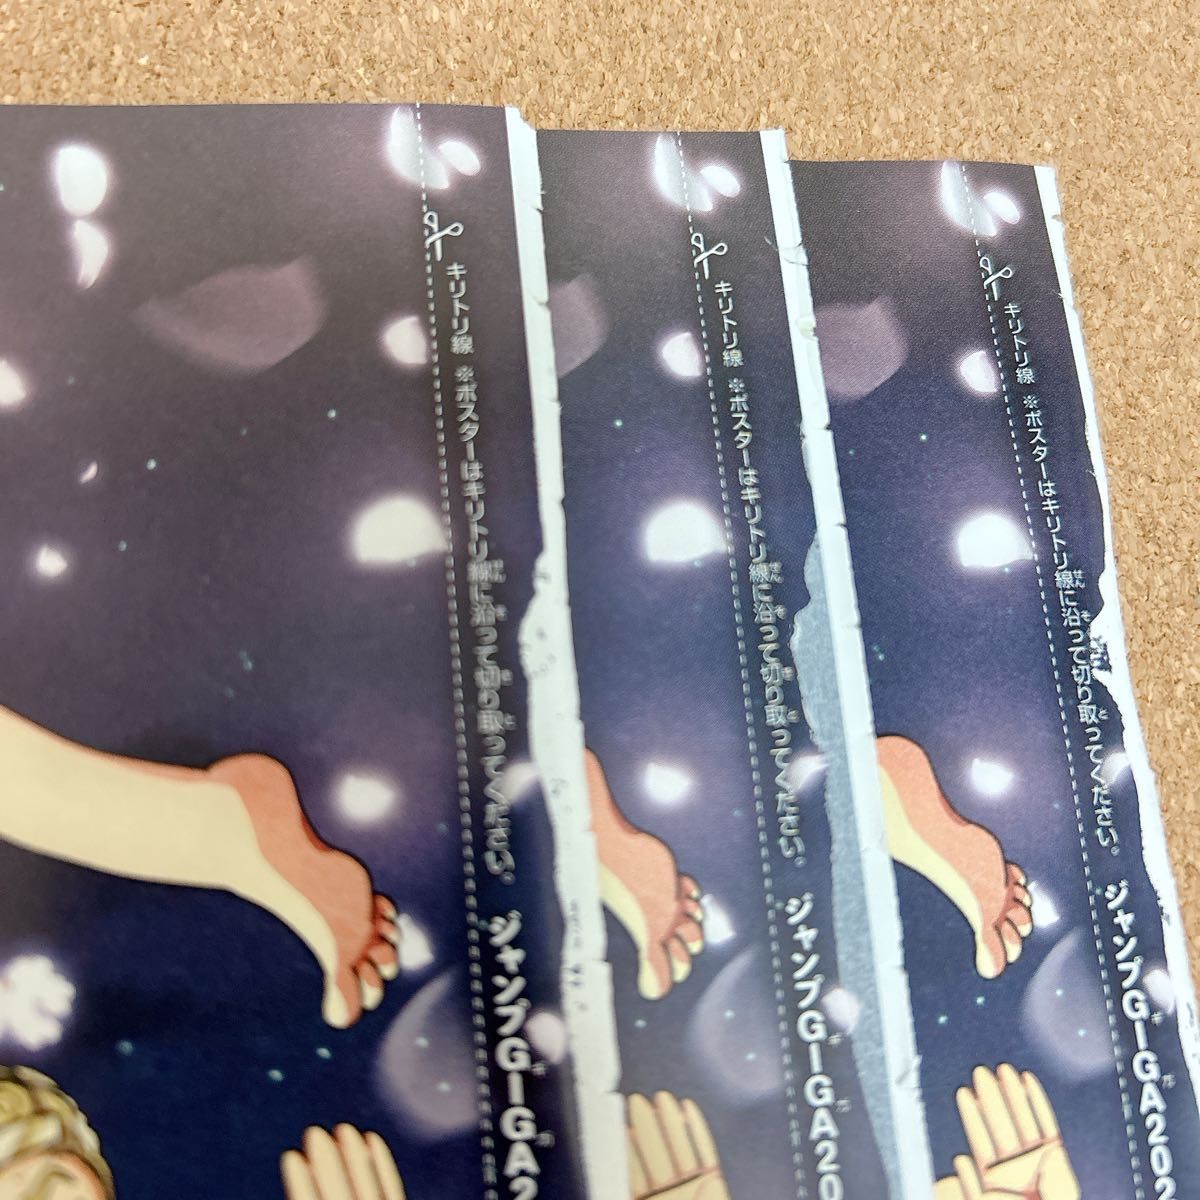 ジャンプGIGA 付録 ポスター 夜桜さんちの大作戦 両面ポスター アニメ 原作 コミック 